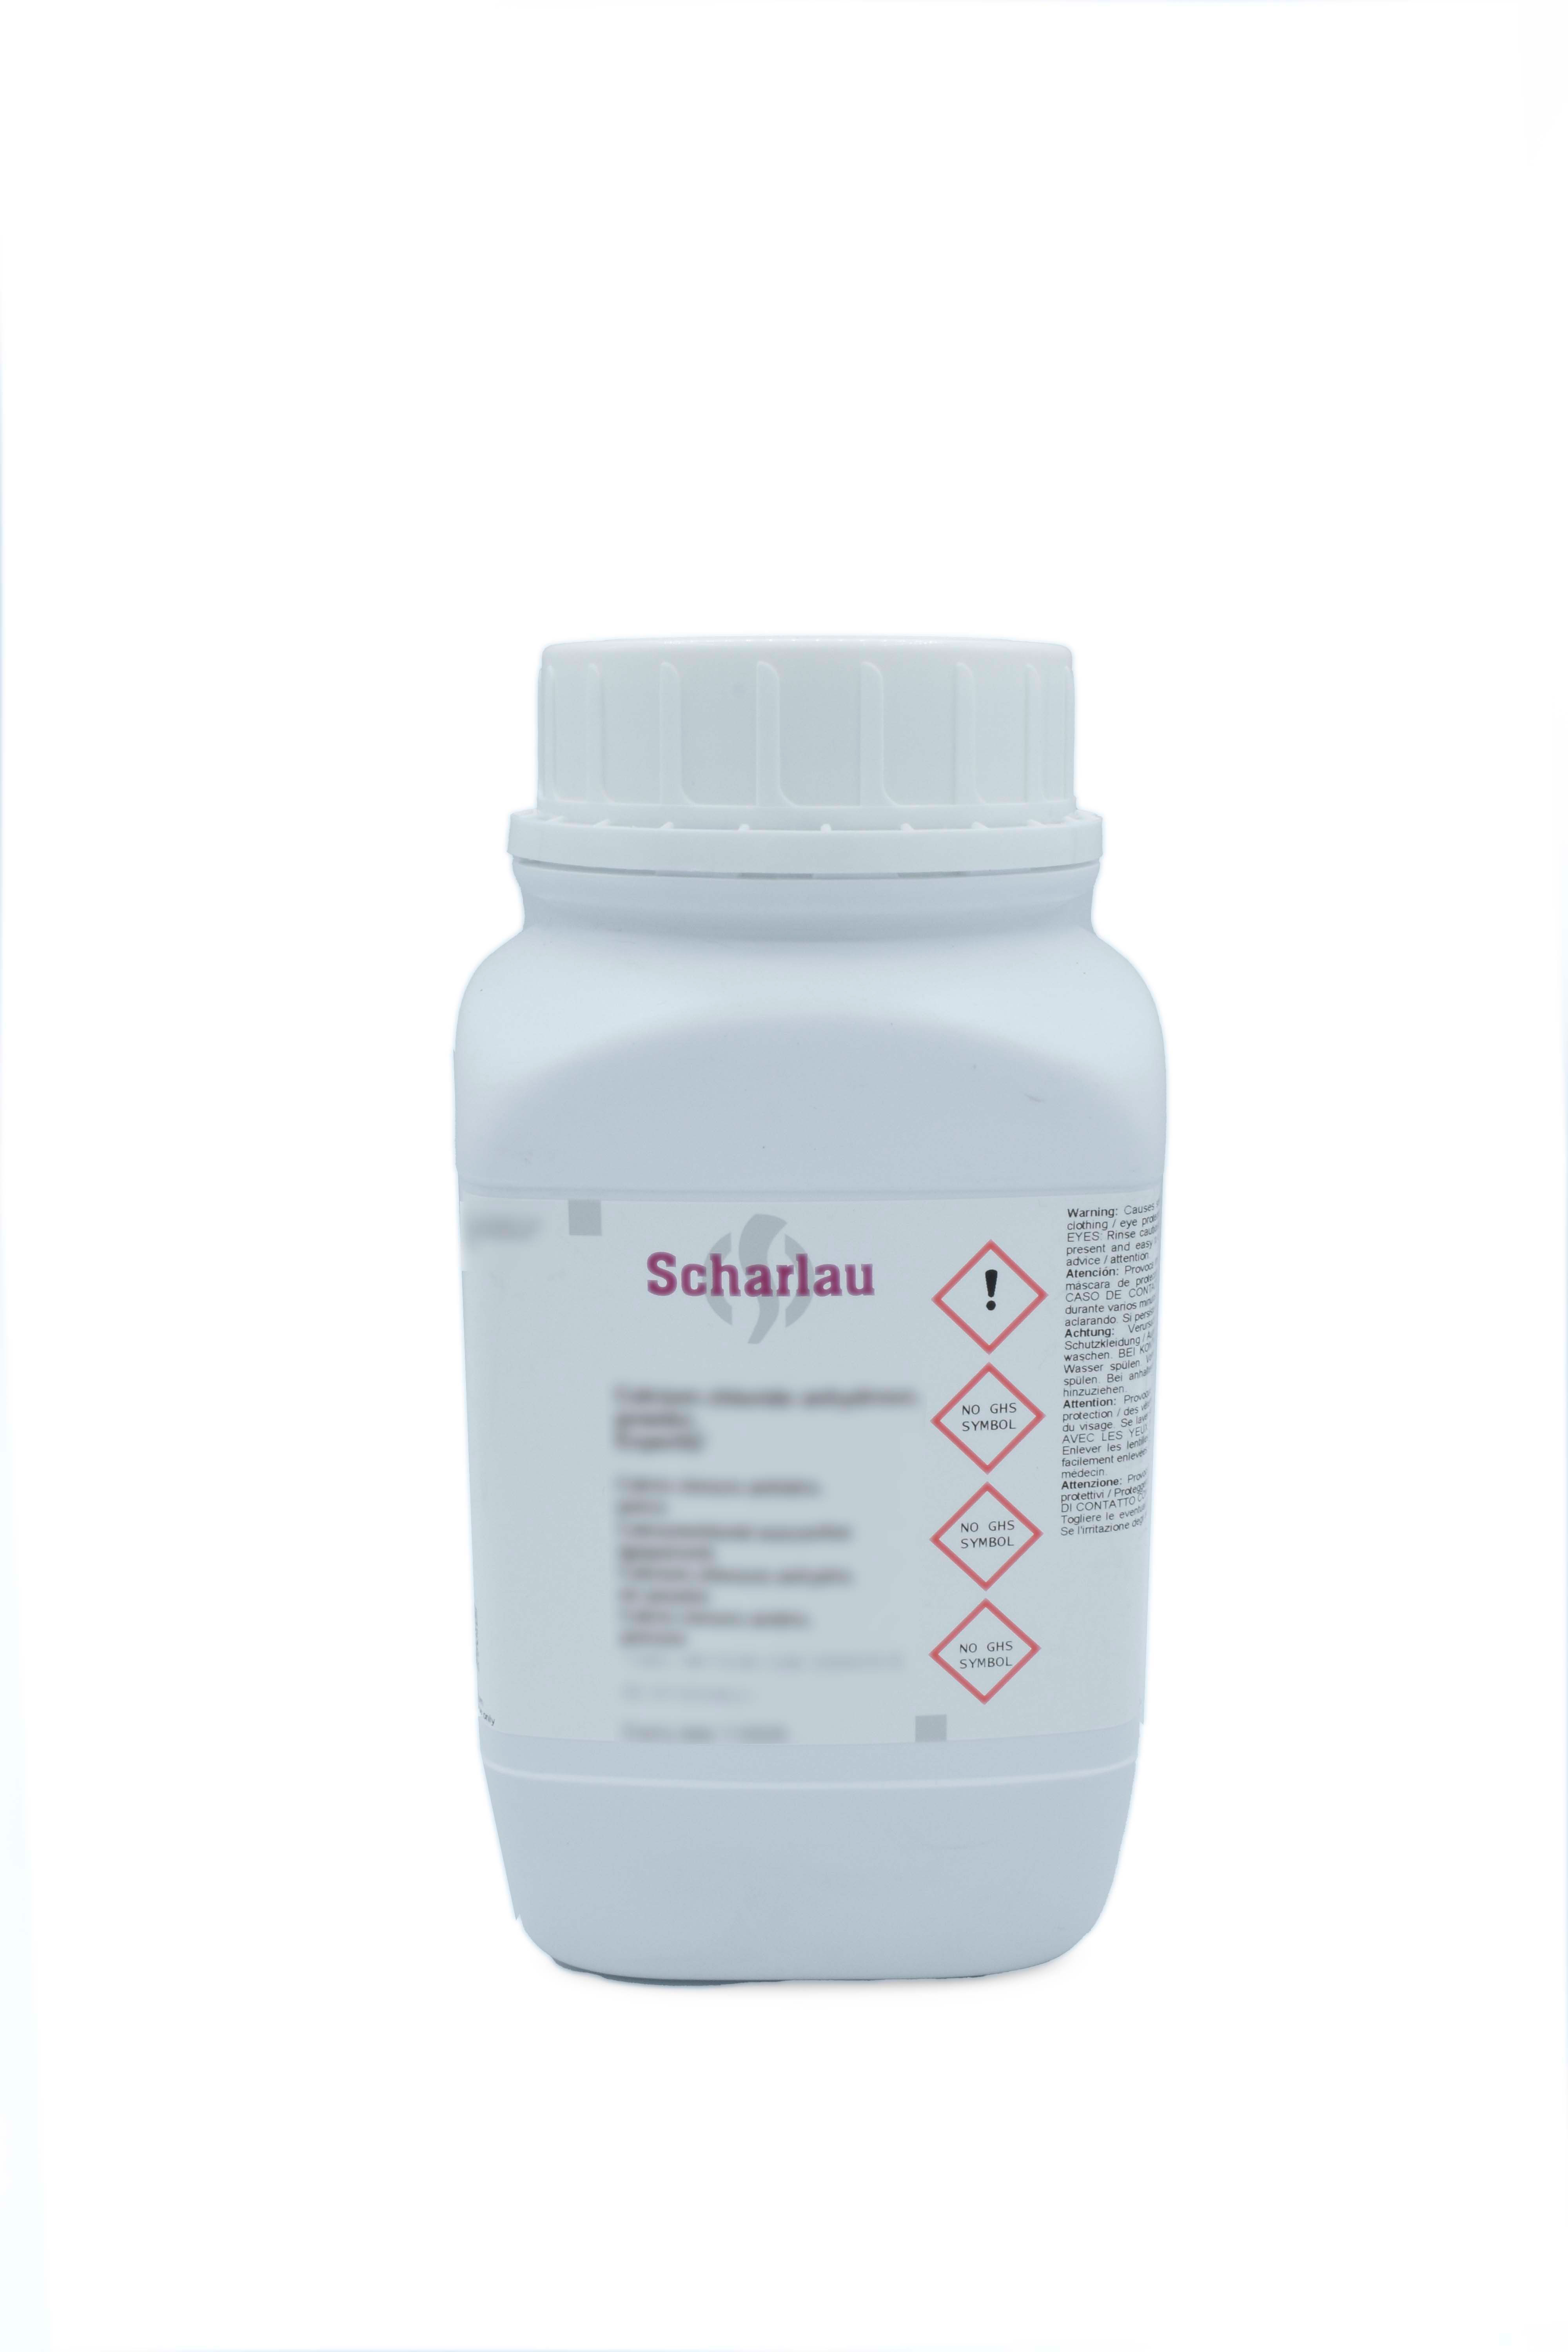 Tris-(hydroxymethyl)-aminomethane, Pharmpur®, Ph Eur, BP